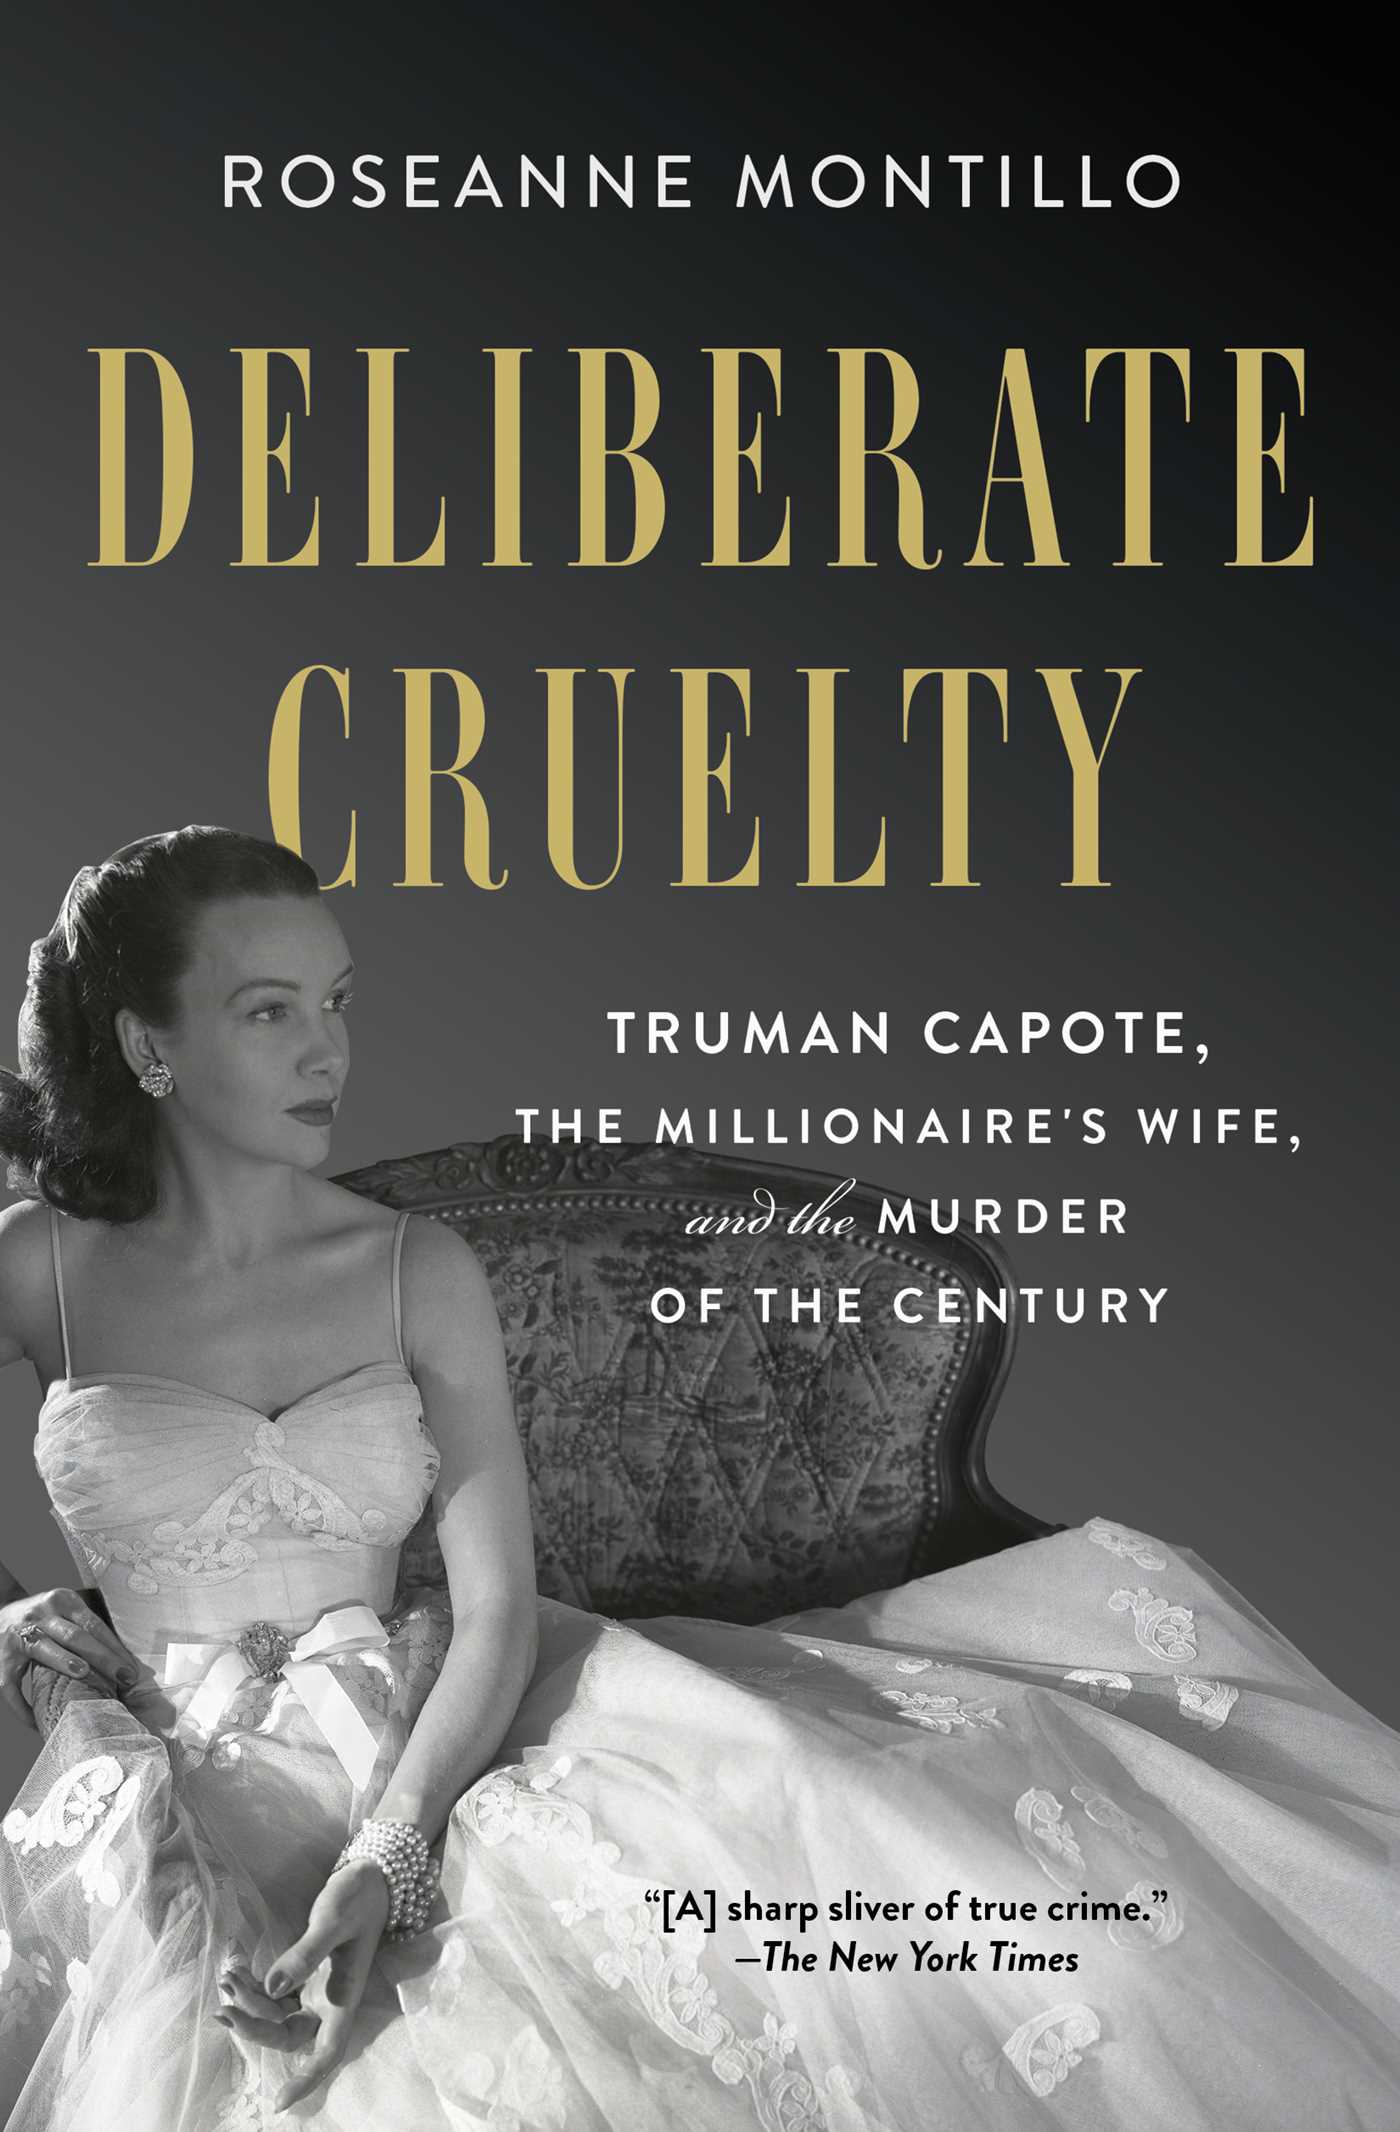 Deliberate Cruelty by Truman Capote